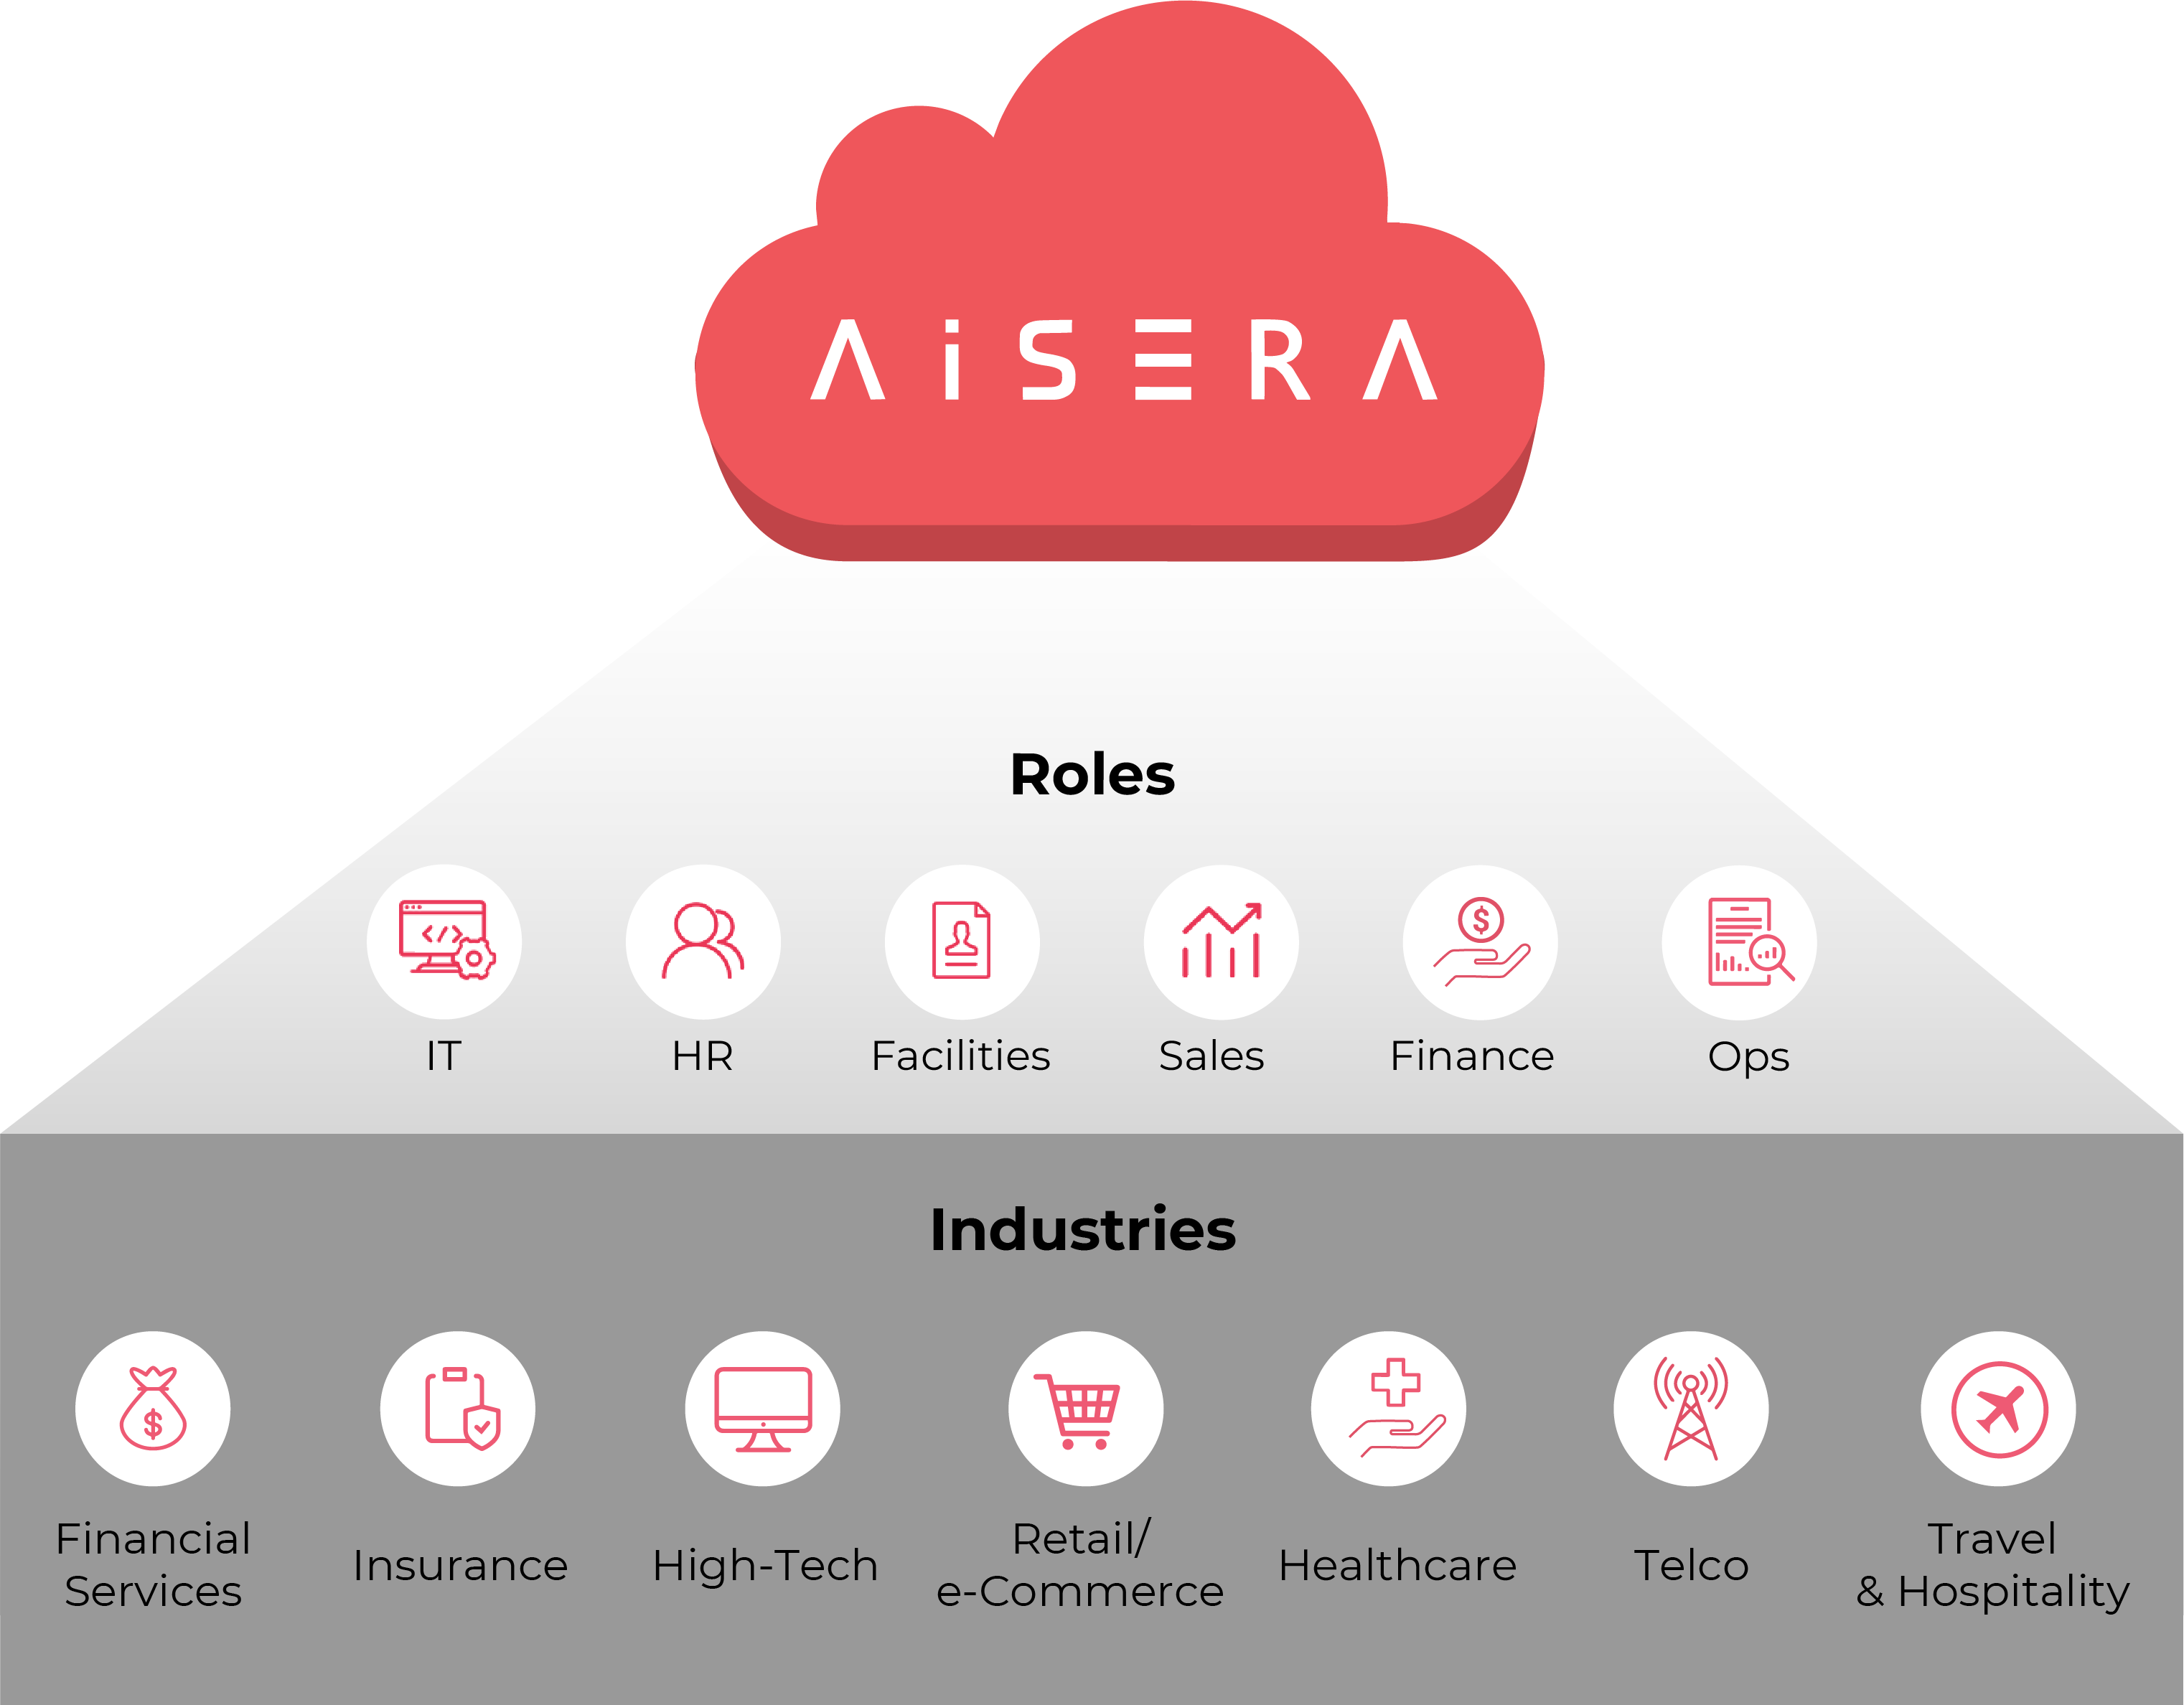 Aisera's ITSM Solution